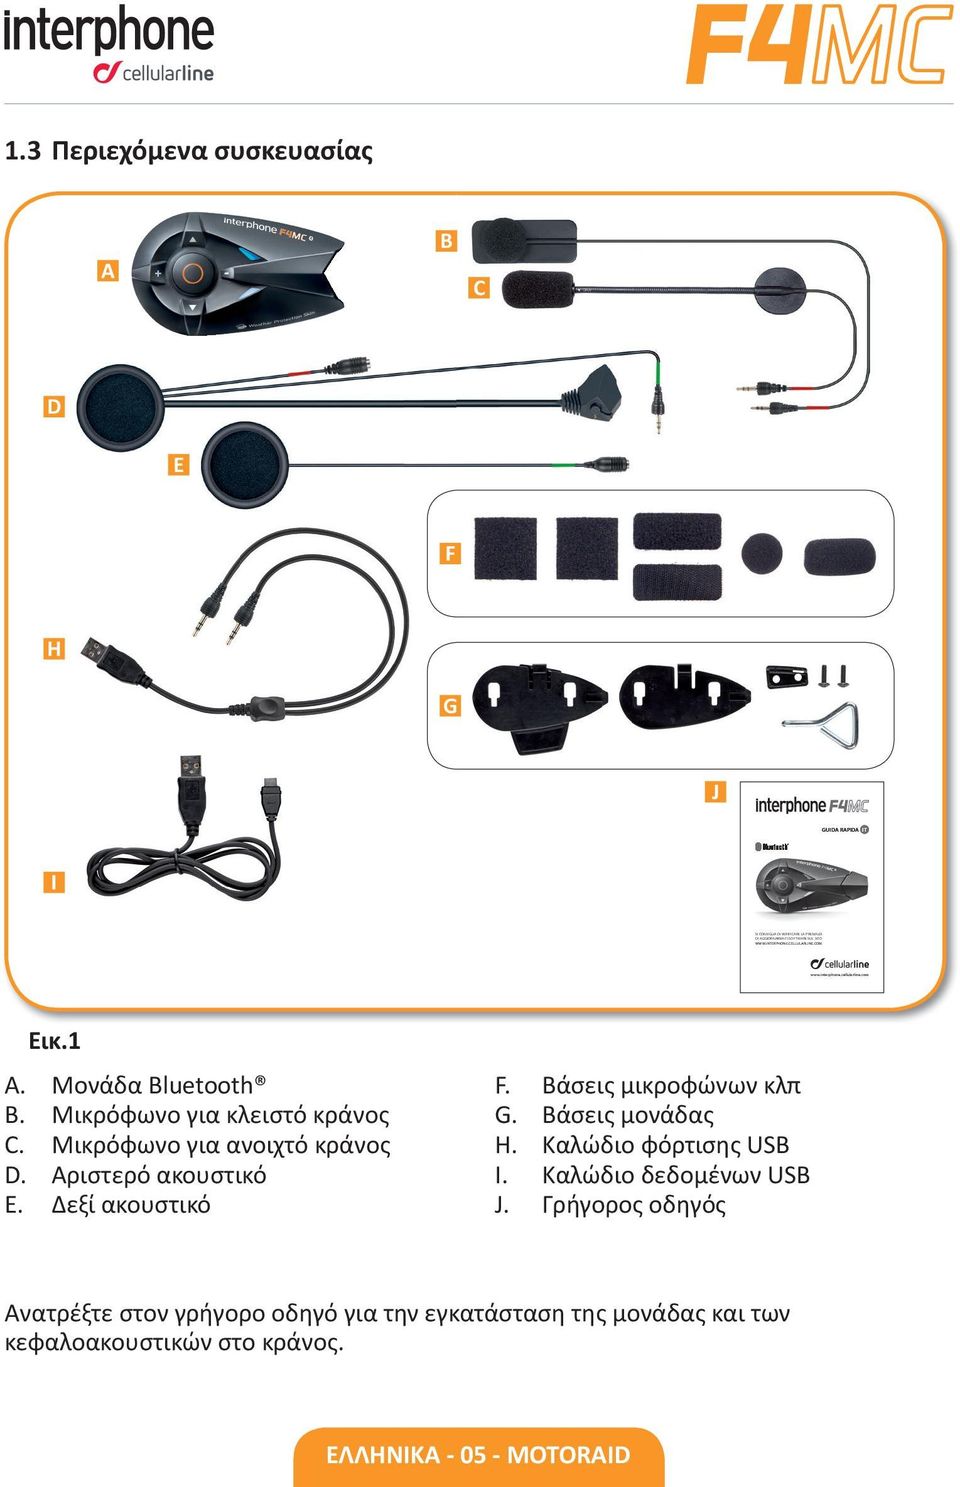 Μικρόφωνο για ανοιχτό κράνος D. Αριστερό ακουστικό E. Δεξί ακουστικό F. Βάσεις μικροφώνων κλπ G. Βάσεις ς H. Καλώδιο φόρτισης USB I.